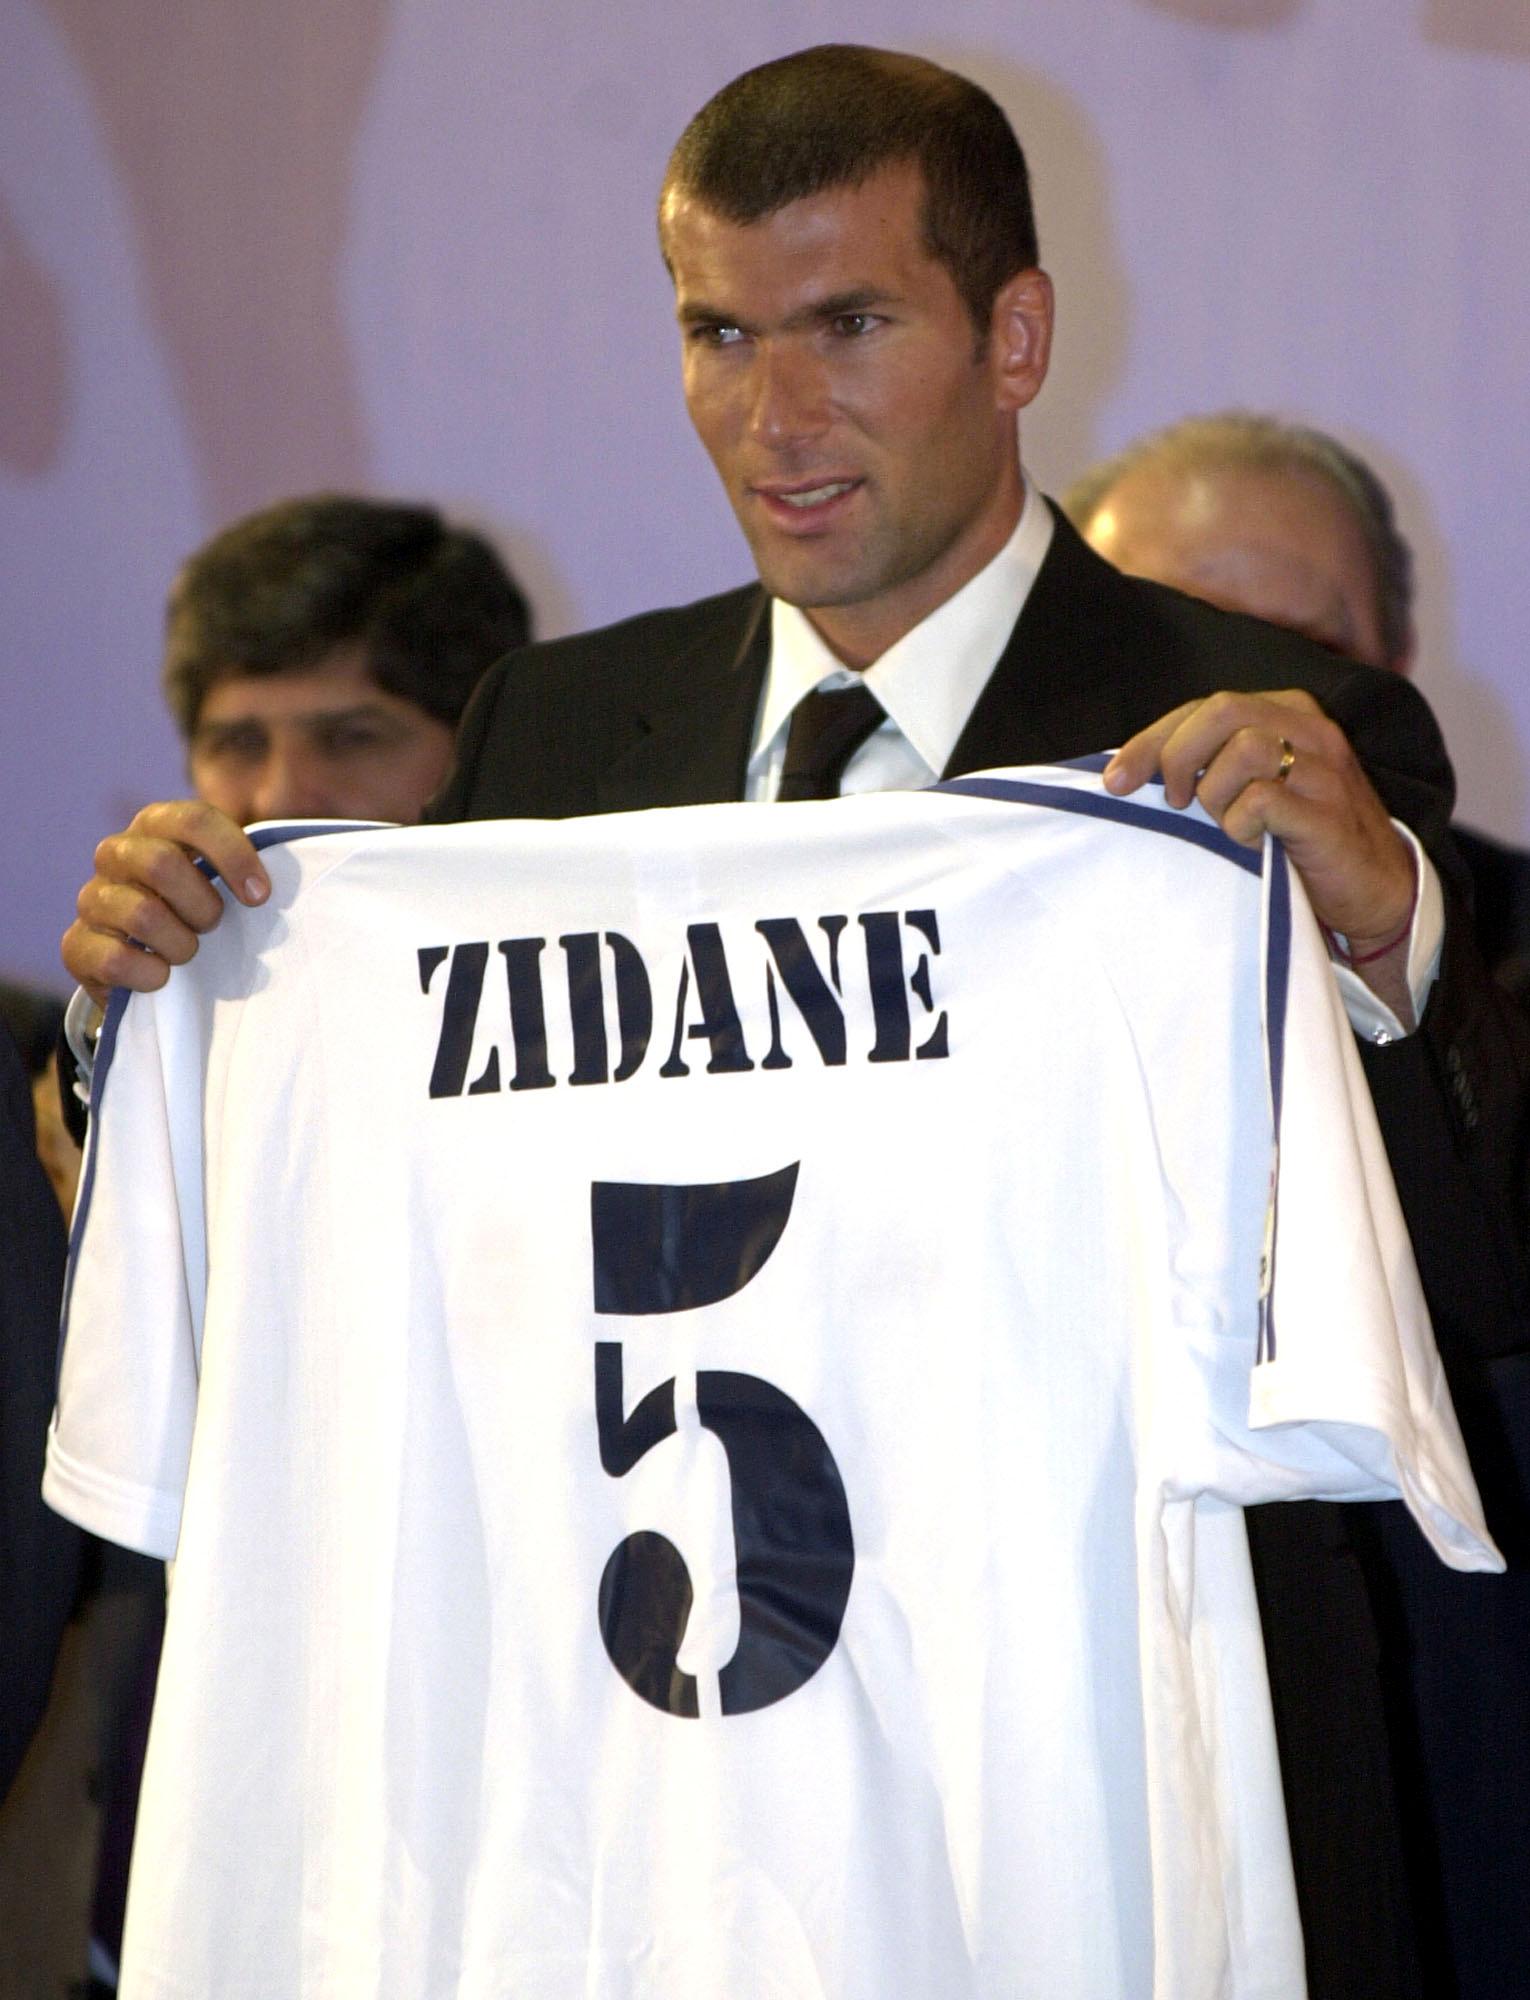 Wir treten in die Fußstapfen von Zinedine Zidane